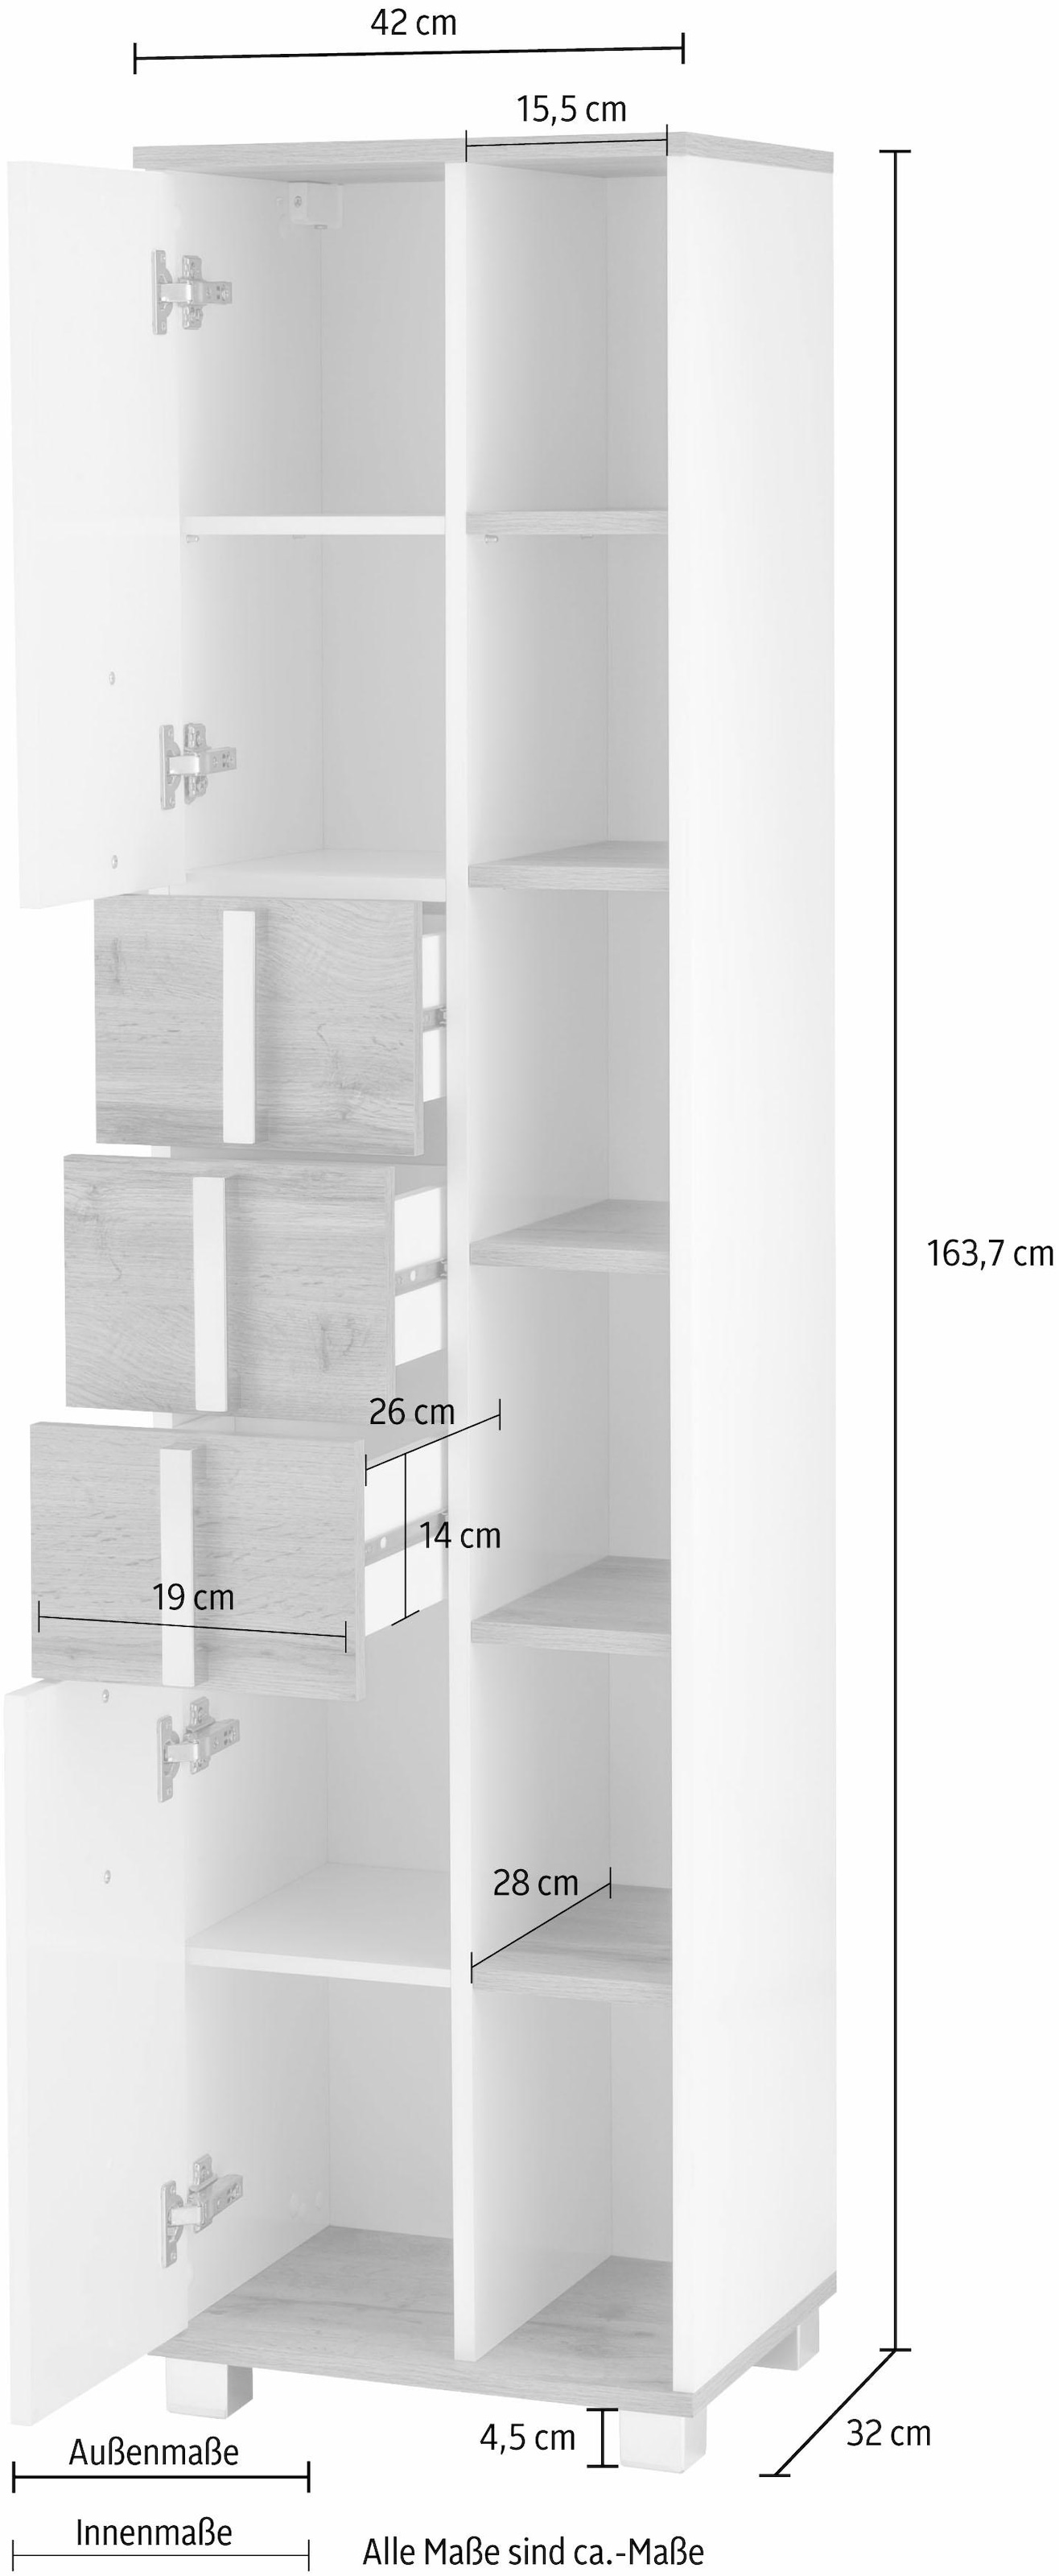 Schildmeyer Hochschrank »Kampen made in Germany«, Höhe 163,7 cm, mit Metallgriffen, Stauraum durch offene Regalfächer